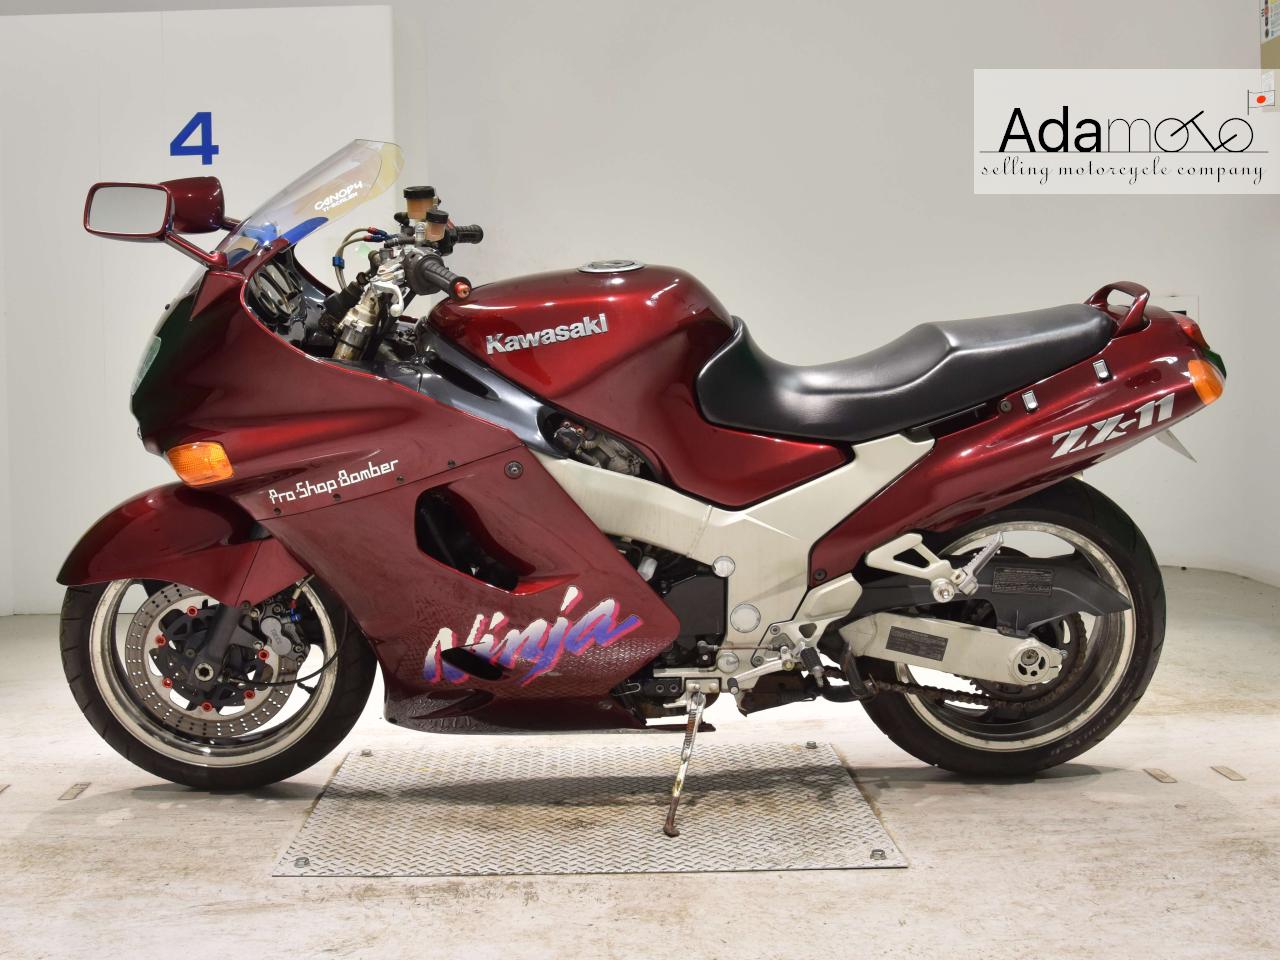 Kawasaki ZX 11 2 - Adamoto - Motorcycles from Japan